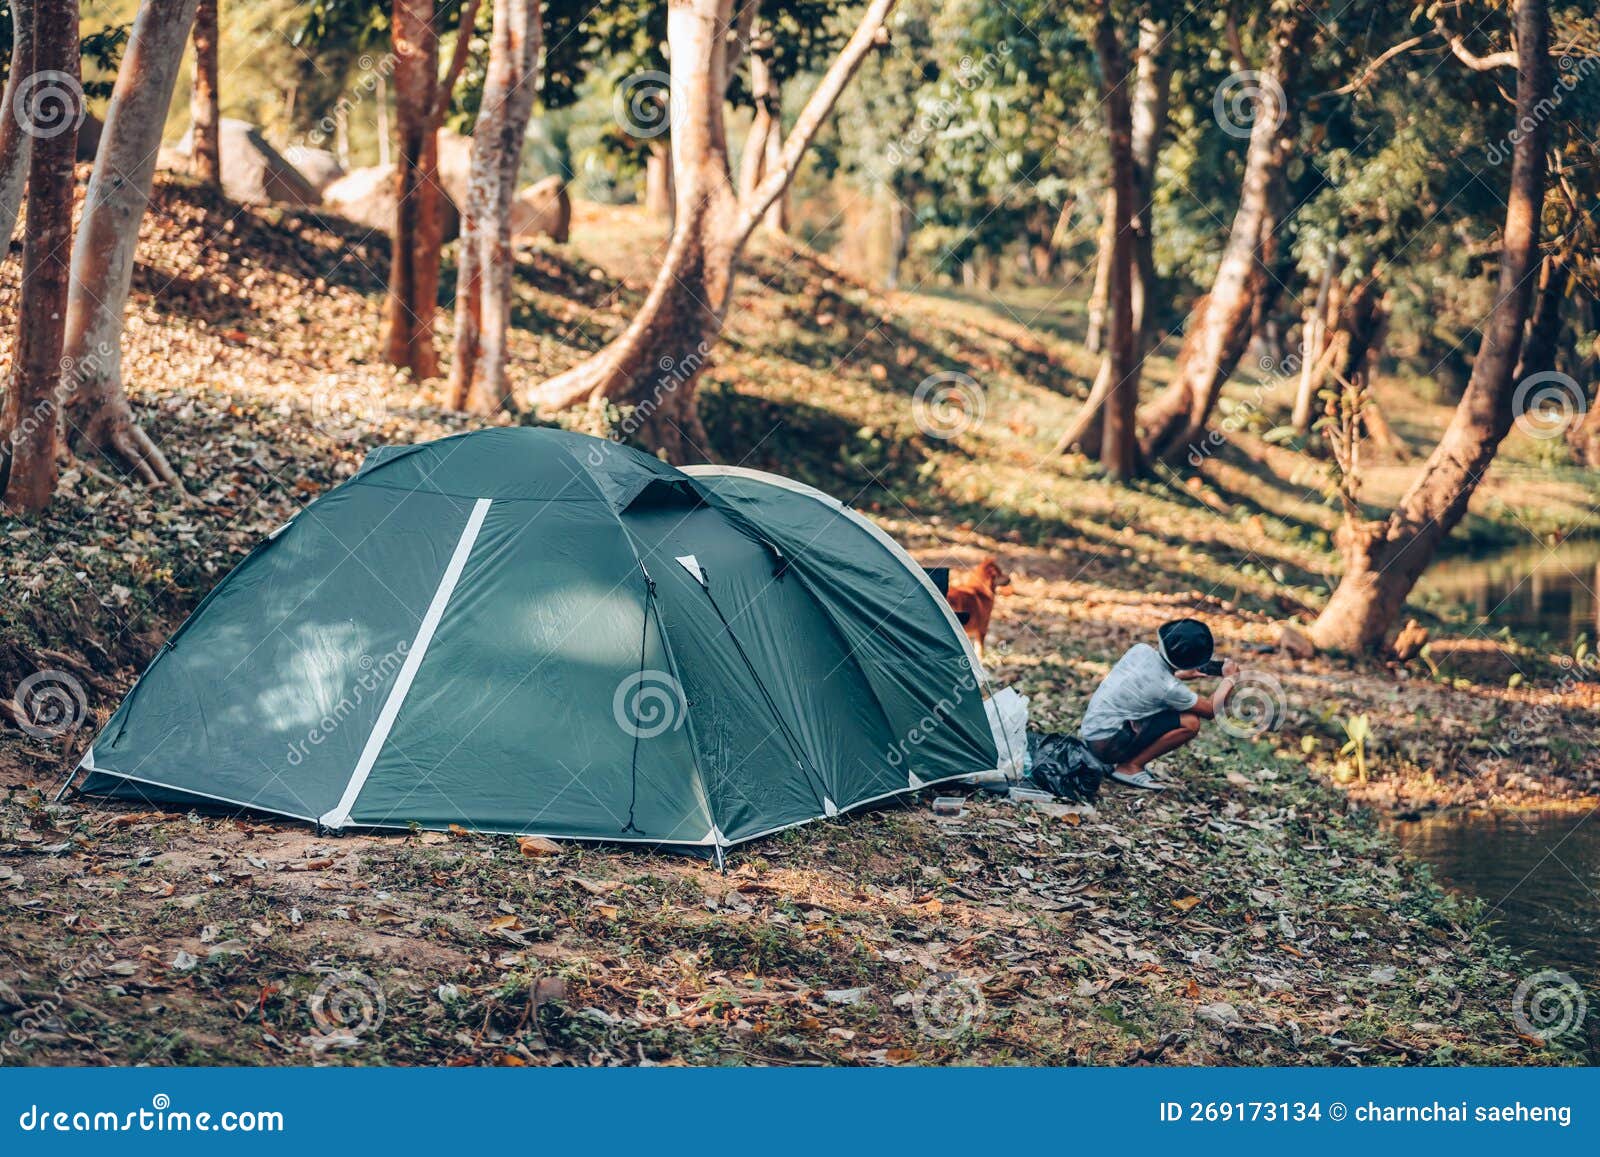 https://thumbs.dreamstime.com/z/gr%C3%BCnes-zelt-auf-dem-gras-im-wald-der-blick-hinter-ist-berg-fr%C3%BCh-campingkonzept-269173134.jpg